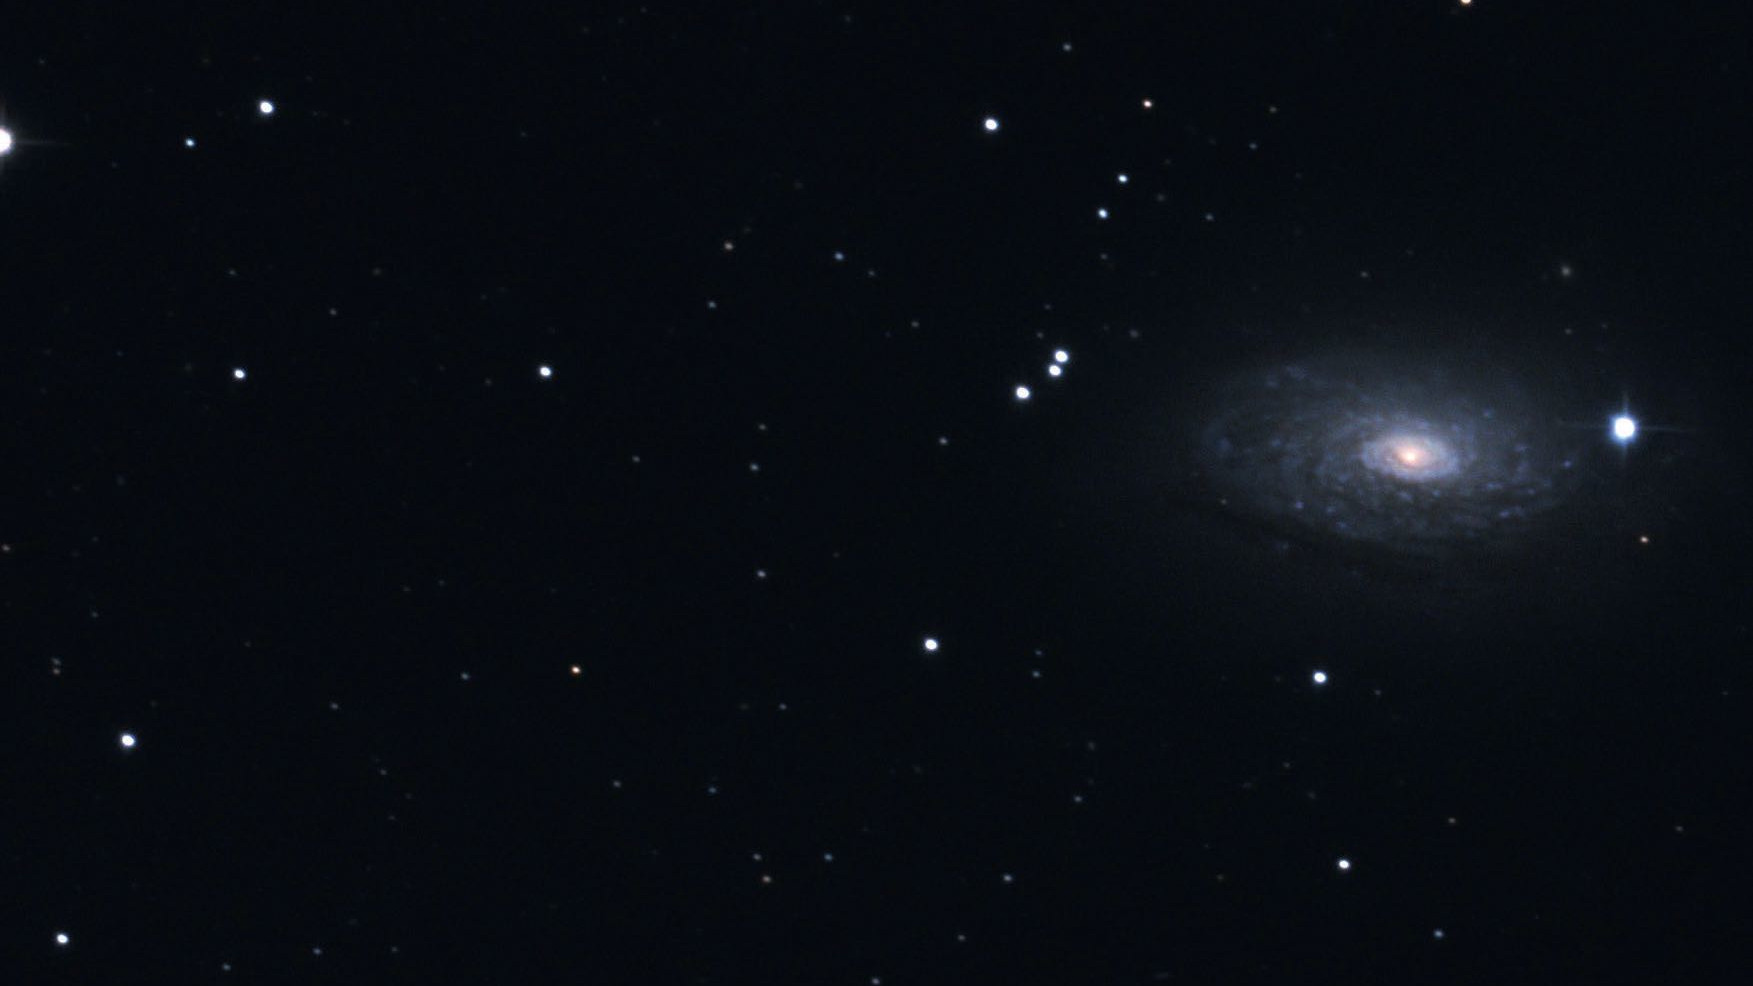 Im Fernglas fast ein Doppelstern:
Auf Fotos wird die Galaxiennatur von M 63 deutlich.
Marcus Degenkolbe